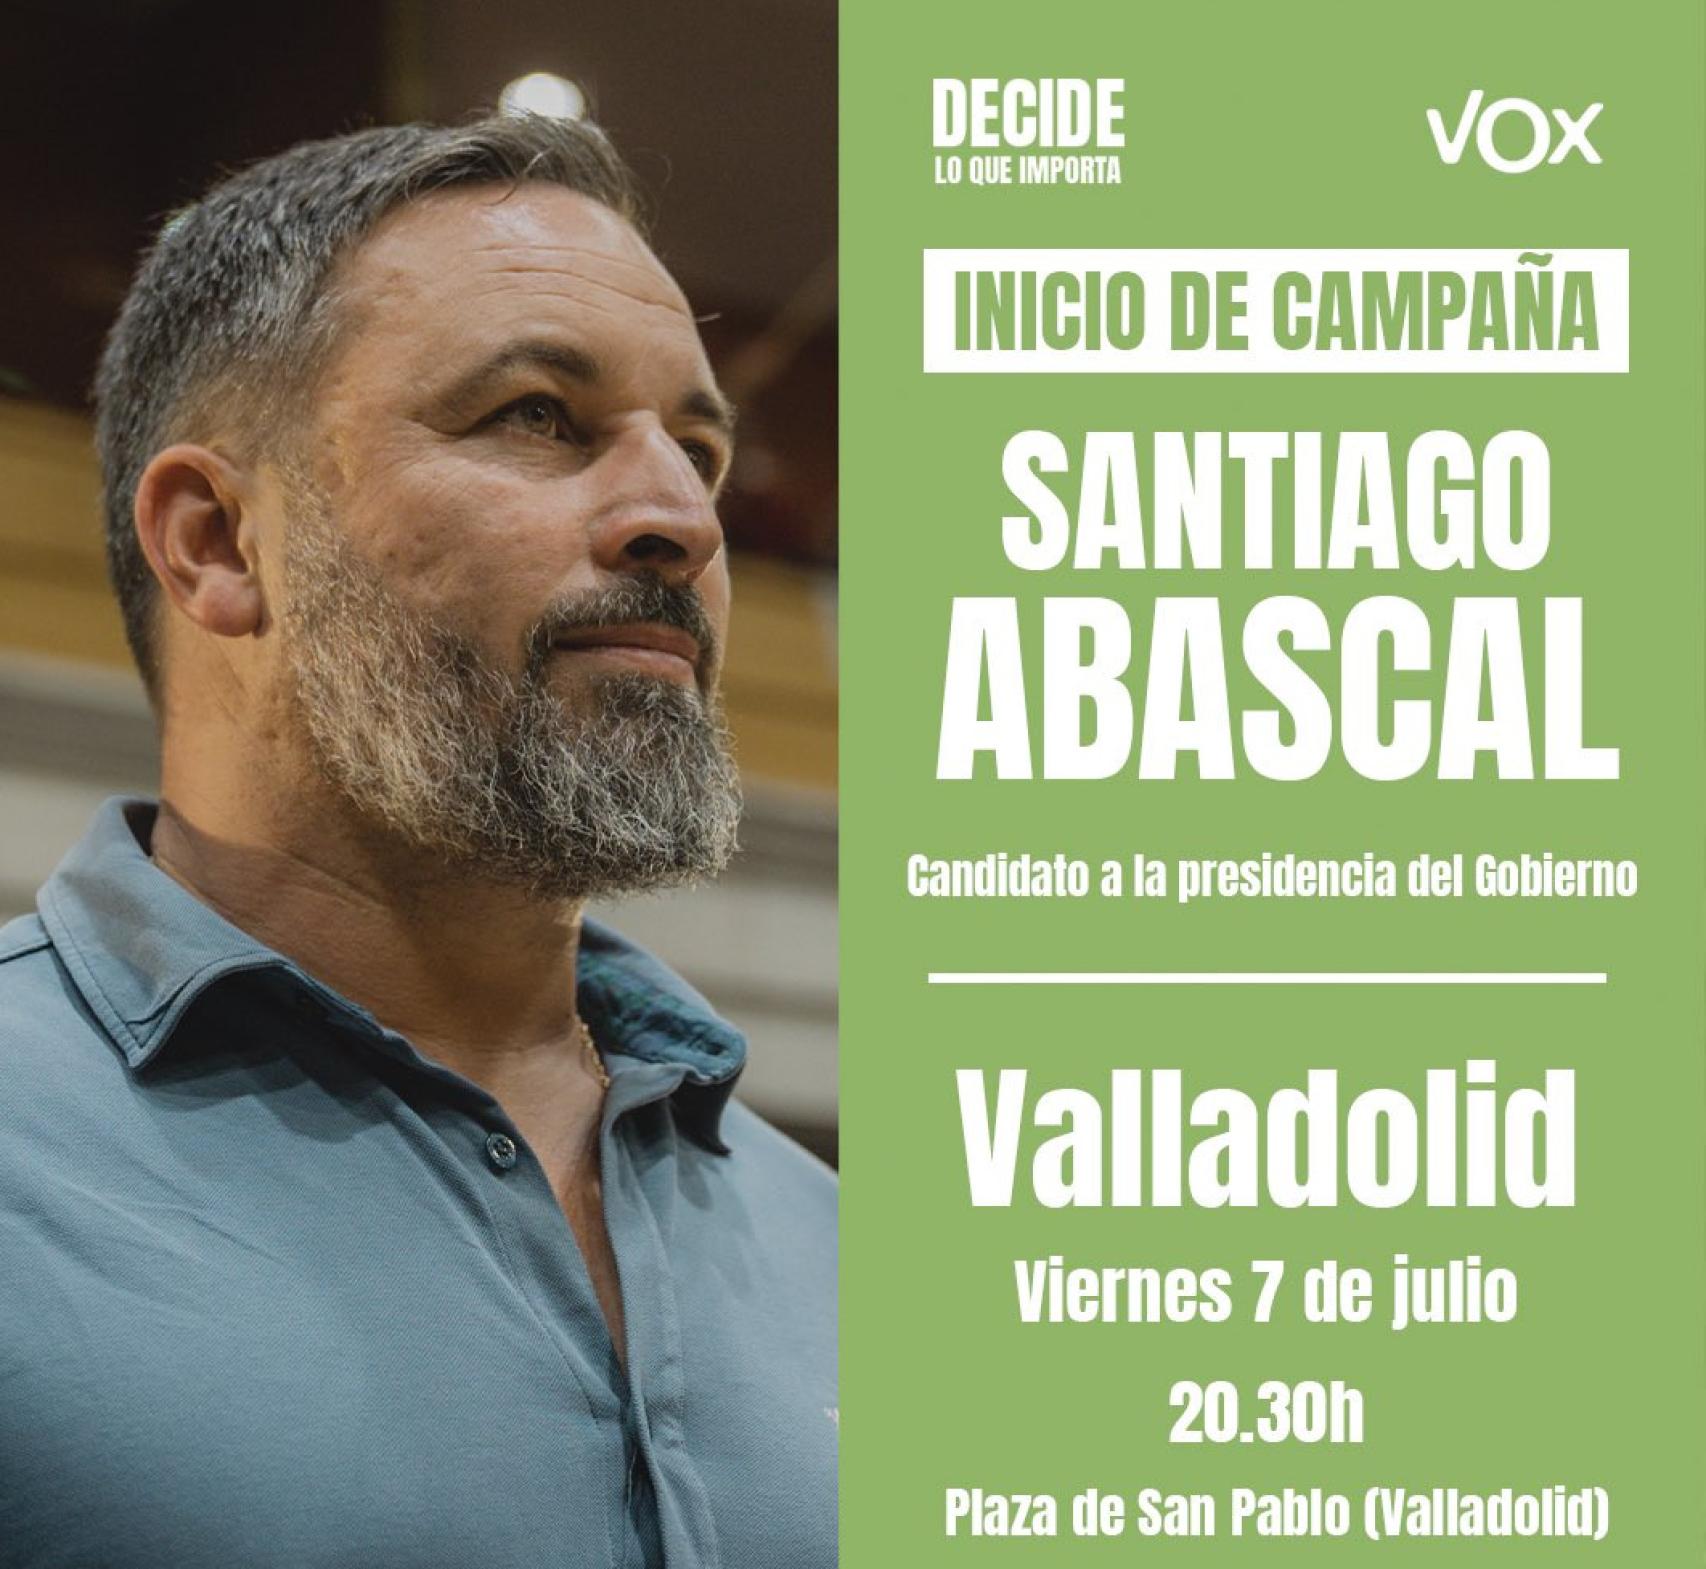 Abascal estará en Valladolid